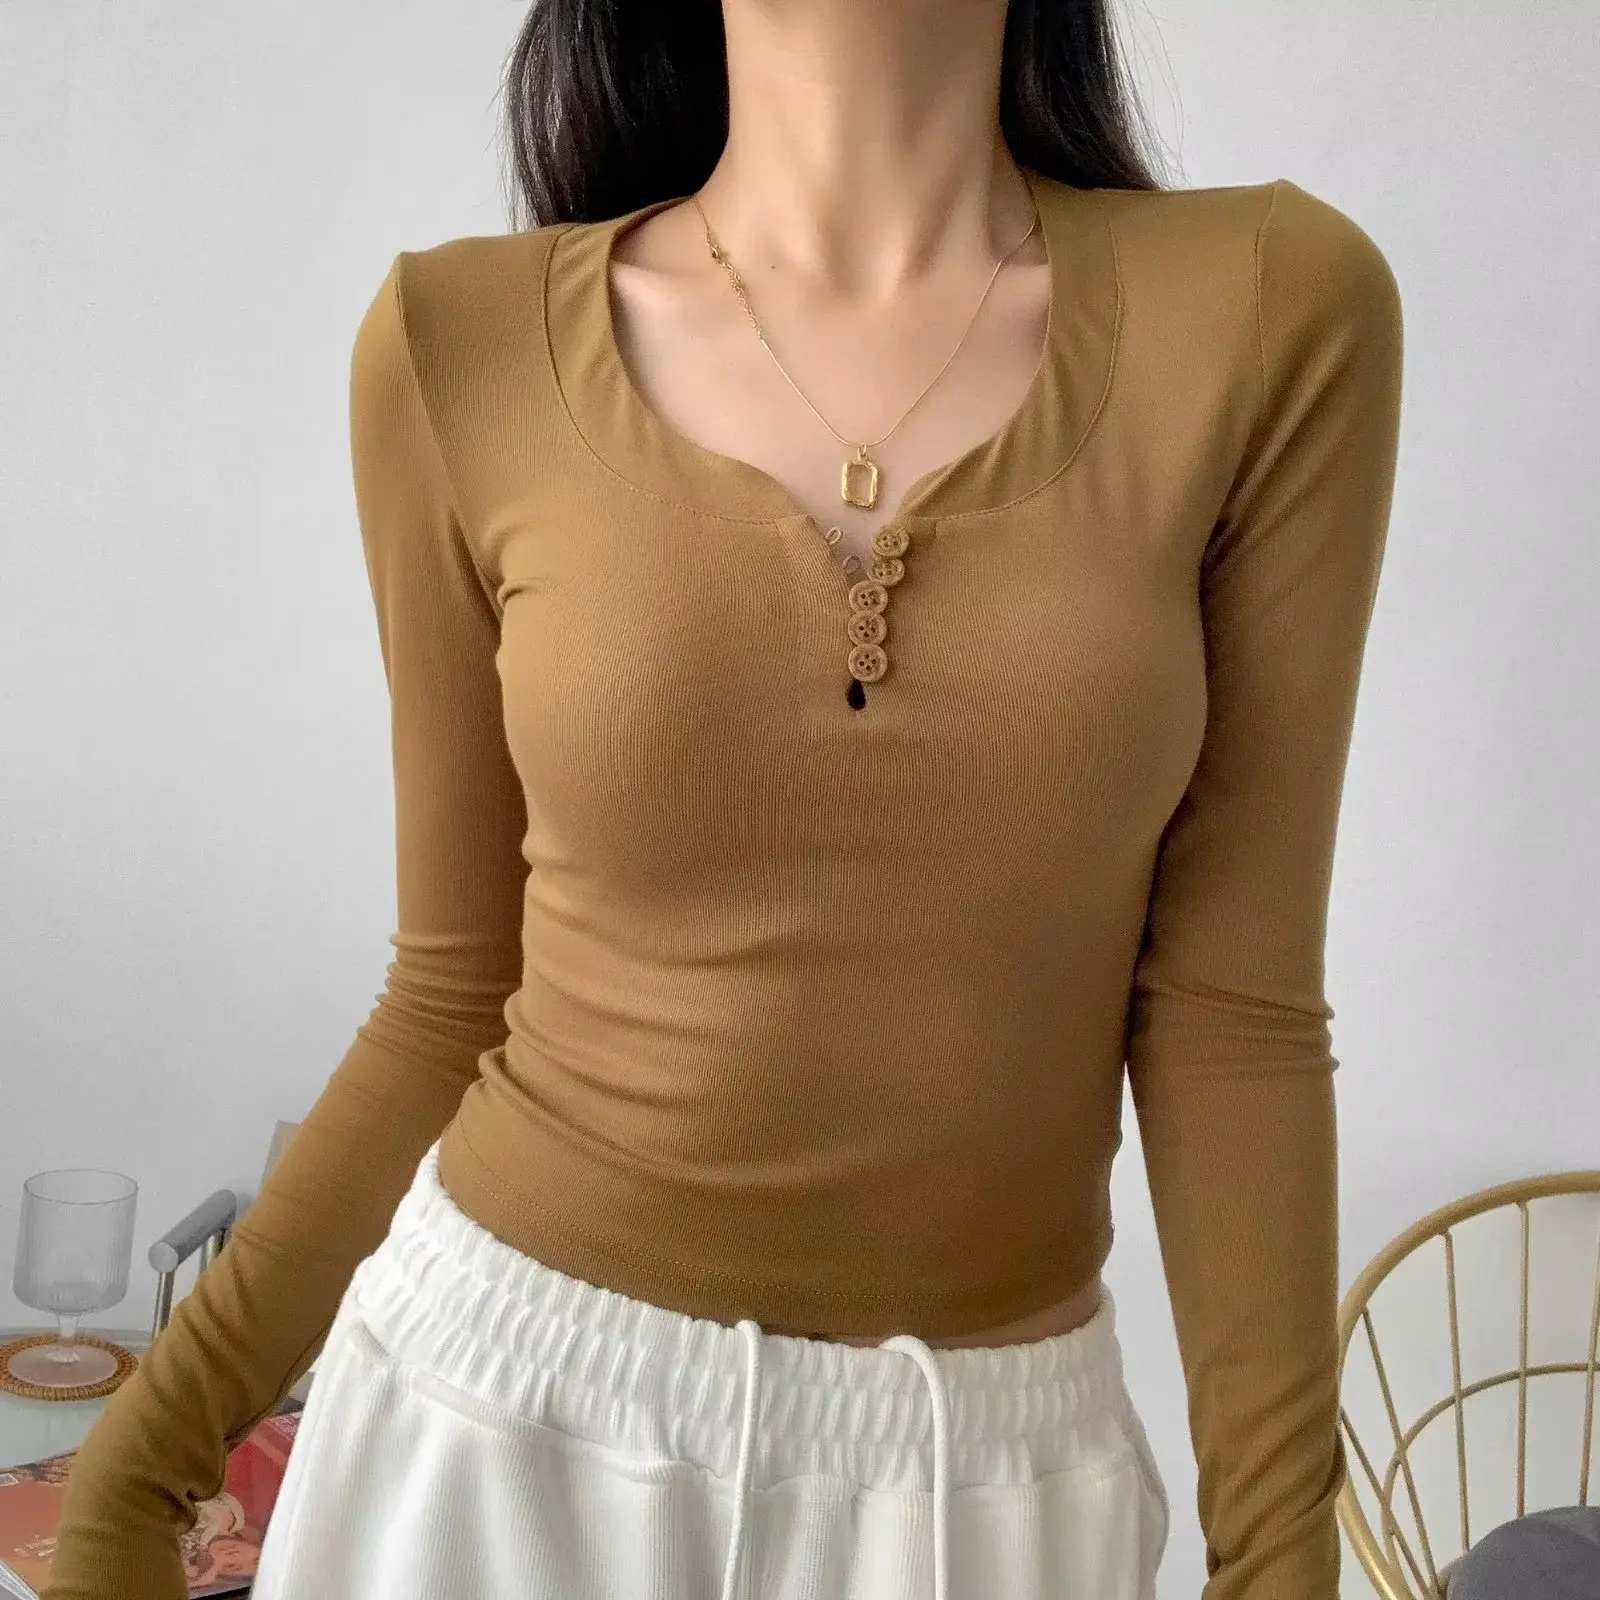 थोक हल्के सेक्सी रिशड लंबी आस्तीन टी-शर्ट महिलाओं के लिए आंतरिक कपड़े v-गर्दन के नीचे की शर्ट पहने महिलाओं के लिए